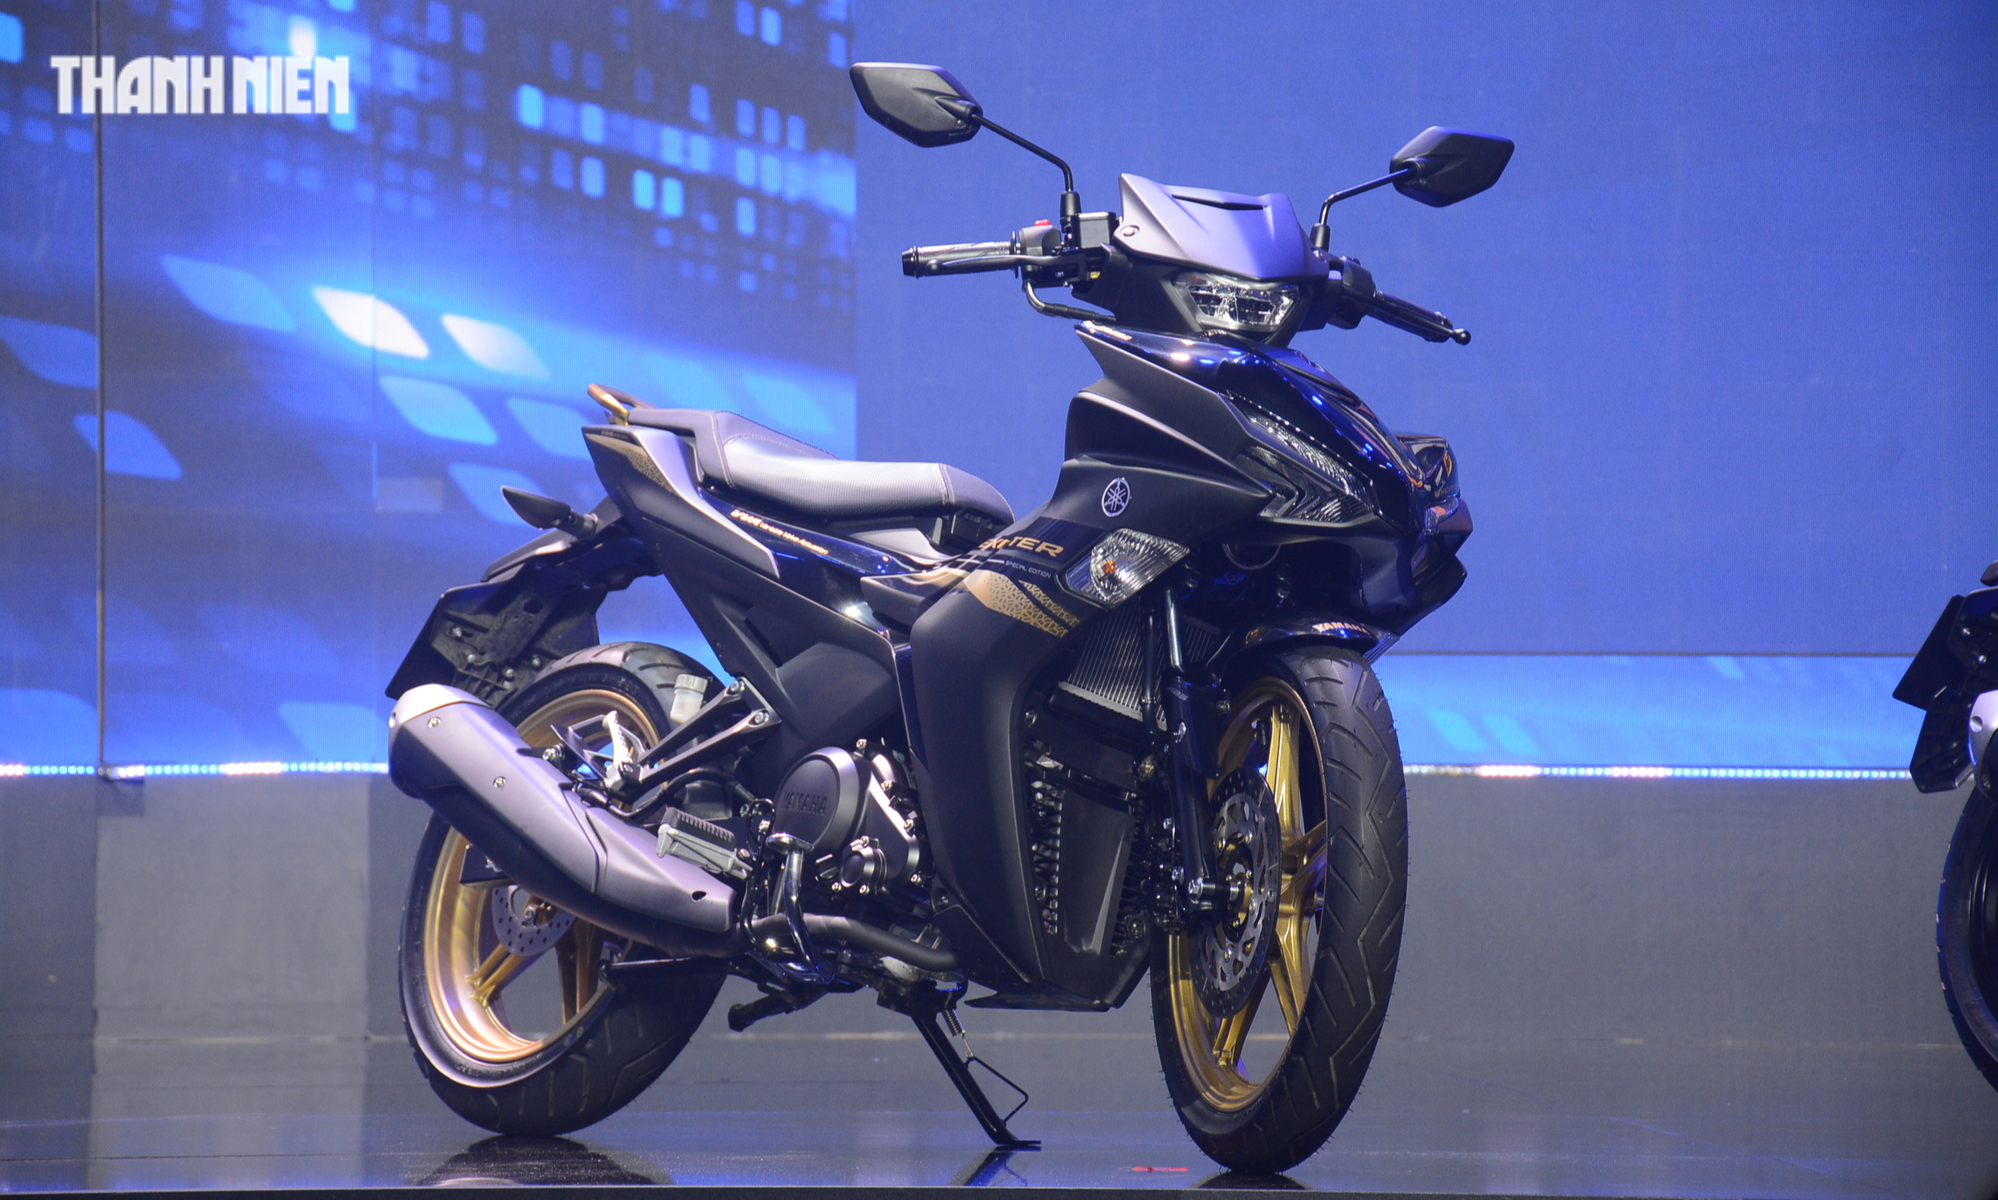 Bản nâng cấp Yamaha Exciter 155 tại Việt Nam có phanh ABS, giá từ 48 triệu đồng - Ảnh 2.